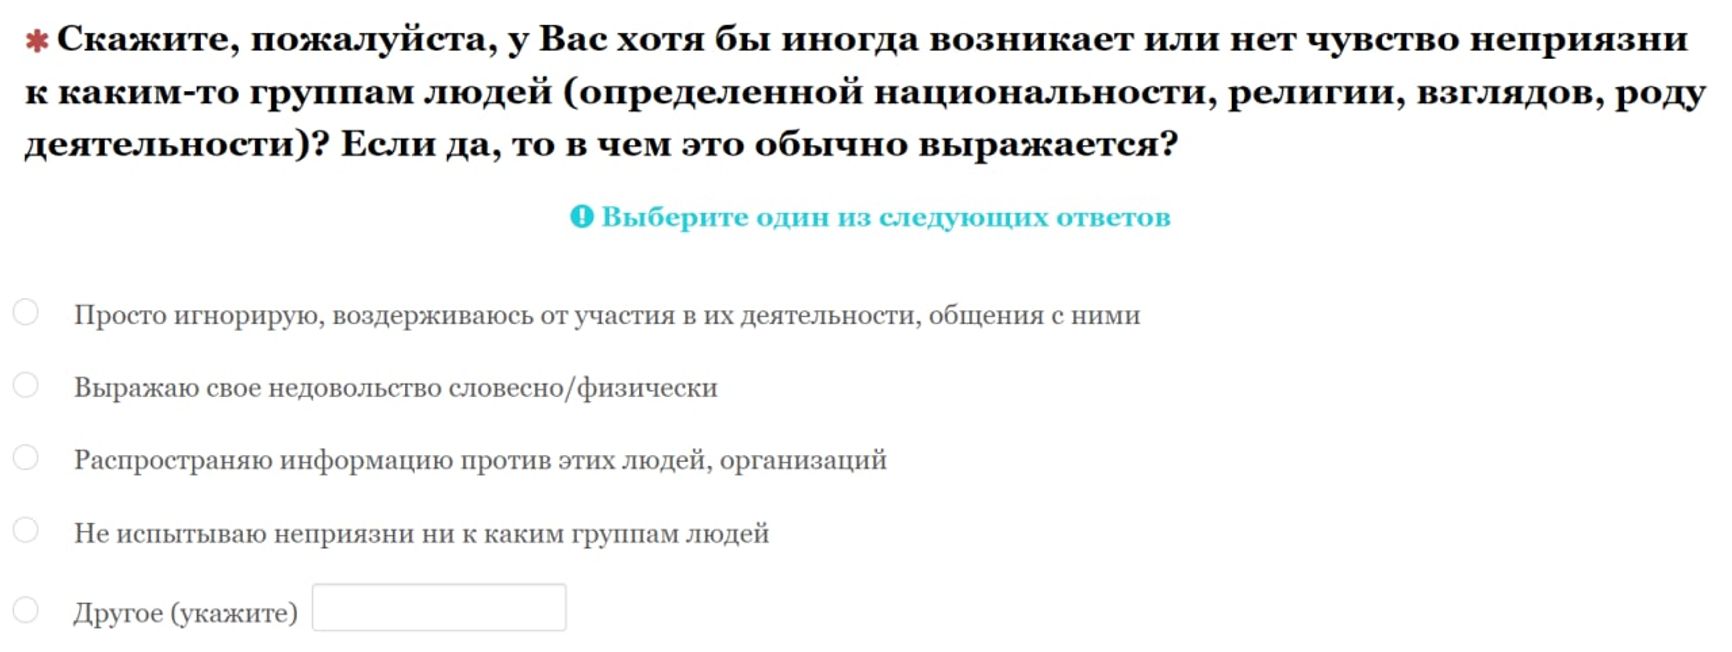 Российских школьников опрашивают о готовности участвовать в протестах, отношении к Путину и «экстремистам»